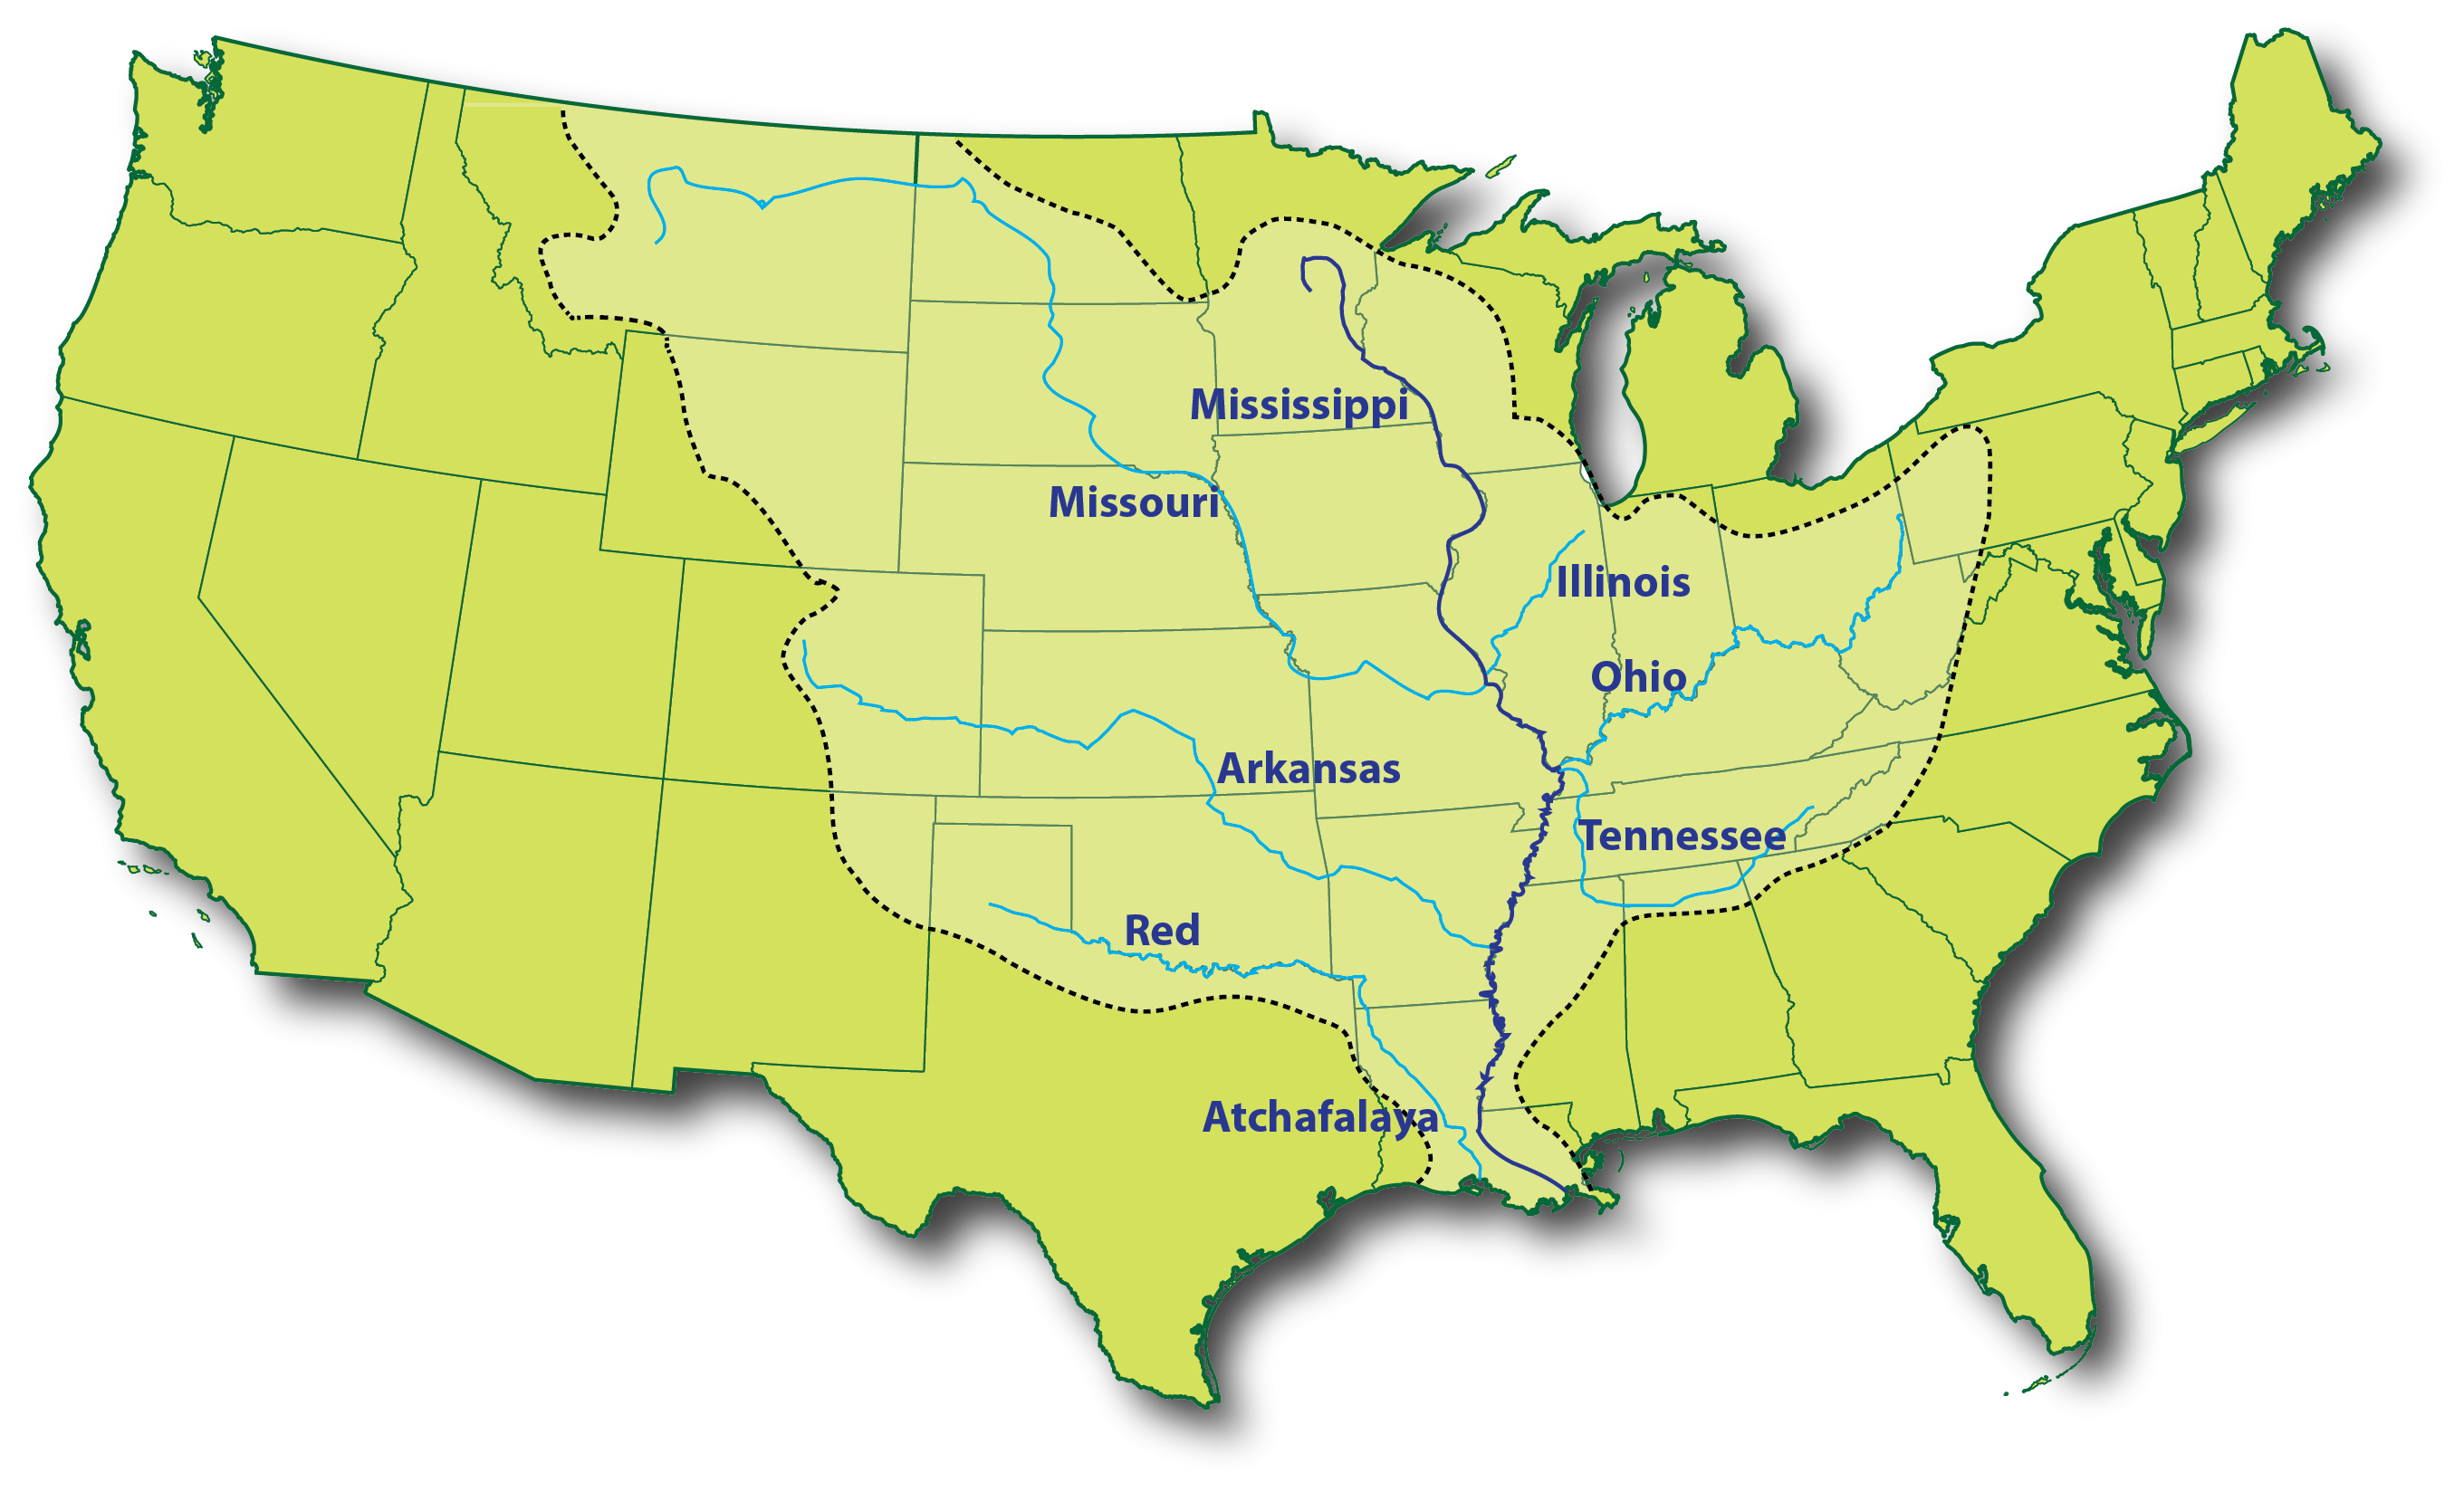 Миссисипи приток миссури. Реки Миссисипи и Миссури на карте Америки. Река Миссисипи на карте США. Река Миссисипи и Миссури на карте.